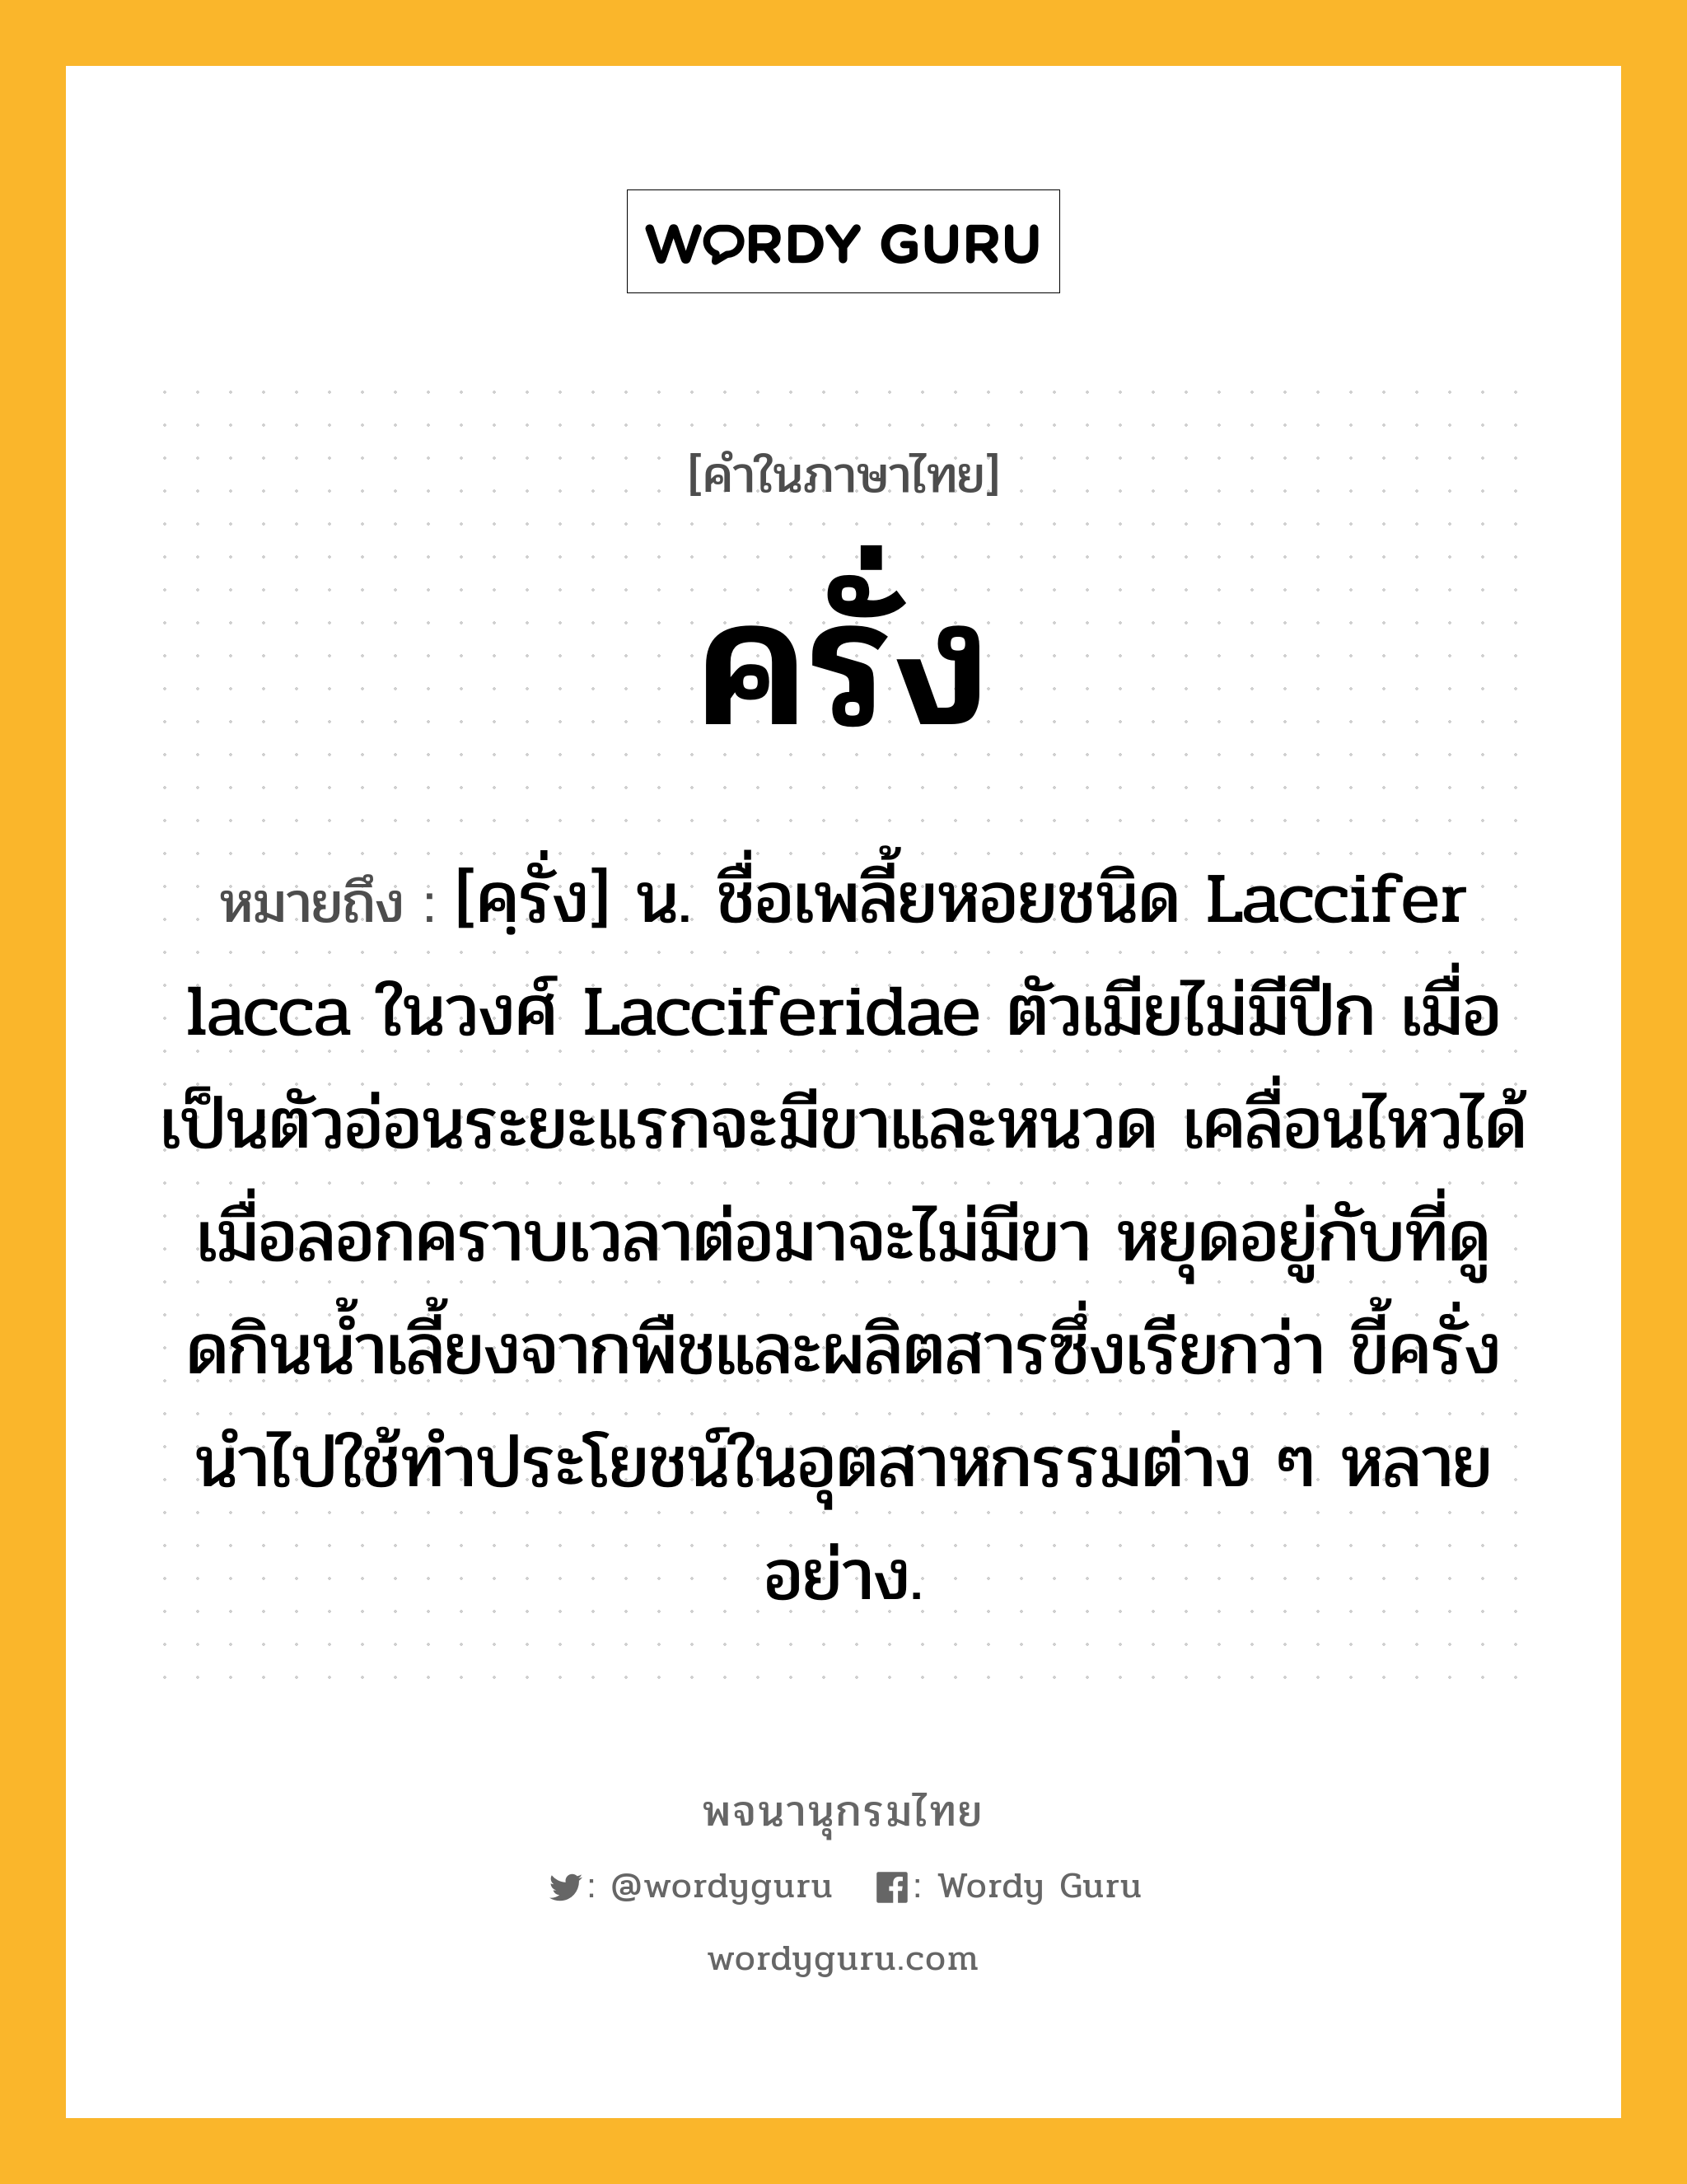 ครั่ง หมายถึงอะไร?, คำในภาษาไทย ครั่ง หมายถึง [คฺรั่ง] น. ชื่อเพลี้ยหอยชนิด Laccifer lacca ในวงศ์ Lacciferidae ตัวเมียไม่มีปีก เมื่อเป็นตัวอ่อนระยะแรกจะมีขาและหนวด เคลื่อนไหวได้ เมื่อลอกคราบเวลาต่อมาจะไม่มีขา หยุดอยู่กับที่ดูดกินนํ้าเลี้ยงจากพืชและผลิตสารซึ่งเรียกว่า ขี้ครั่ง นําไปใช้ทําประโยชน์ในอุตสาหกรรมต่าง ๆ หลายอย่าง.